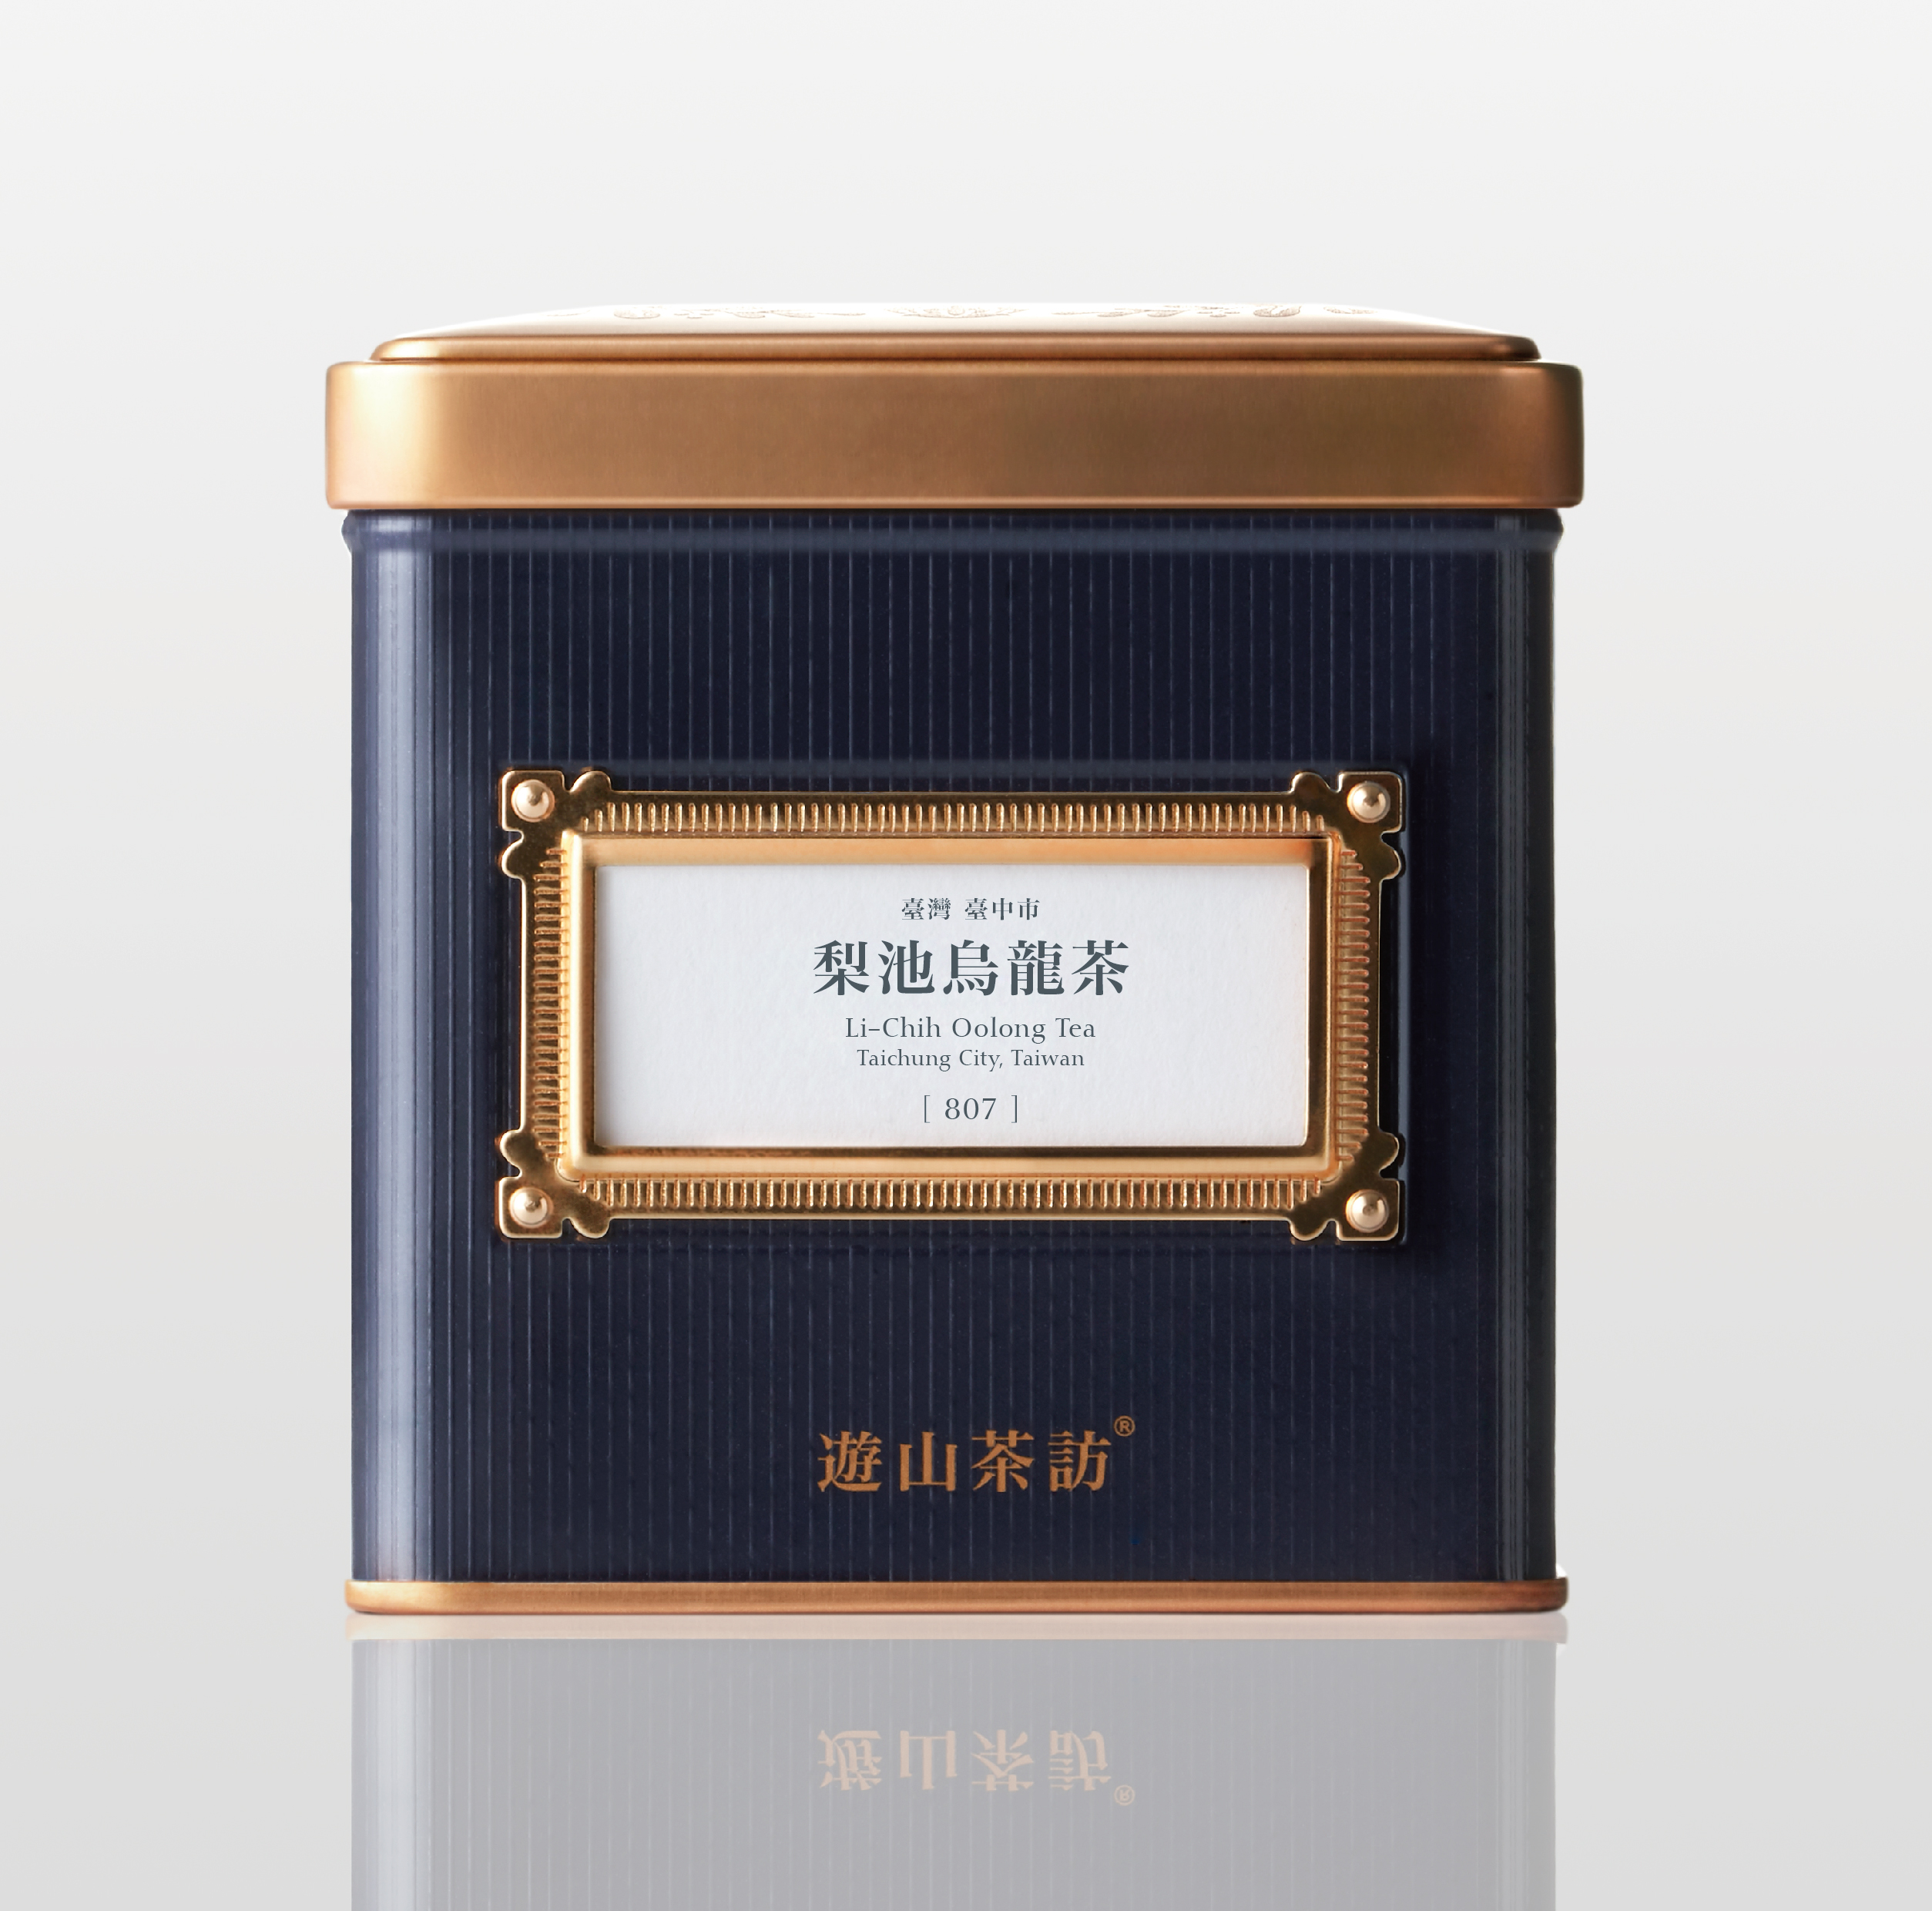 Li-Chih Oolong Tea